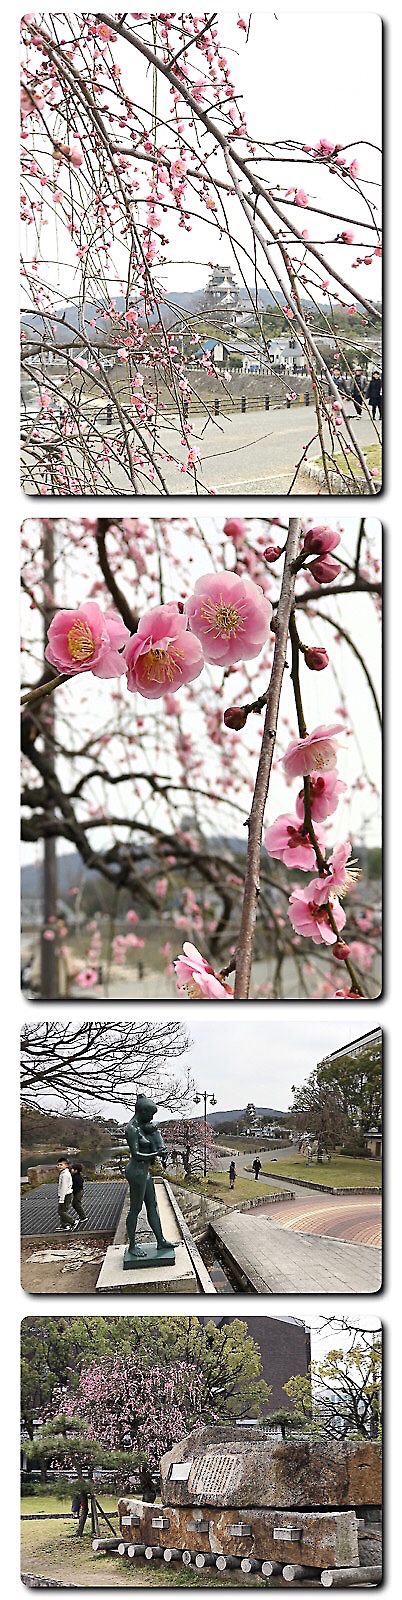 石山公園の枝垂れ梅咲きそろう